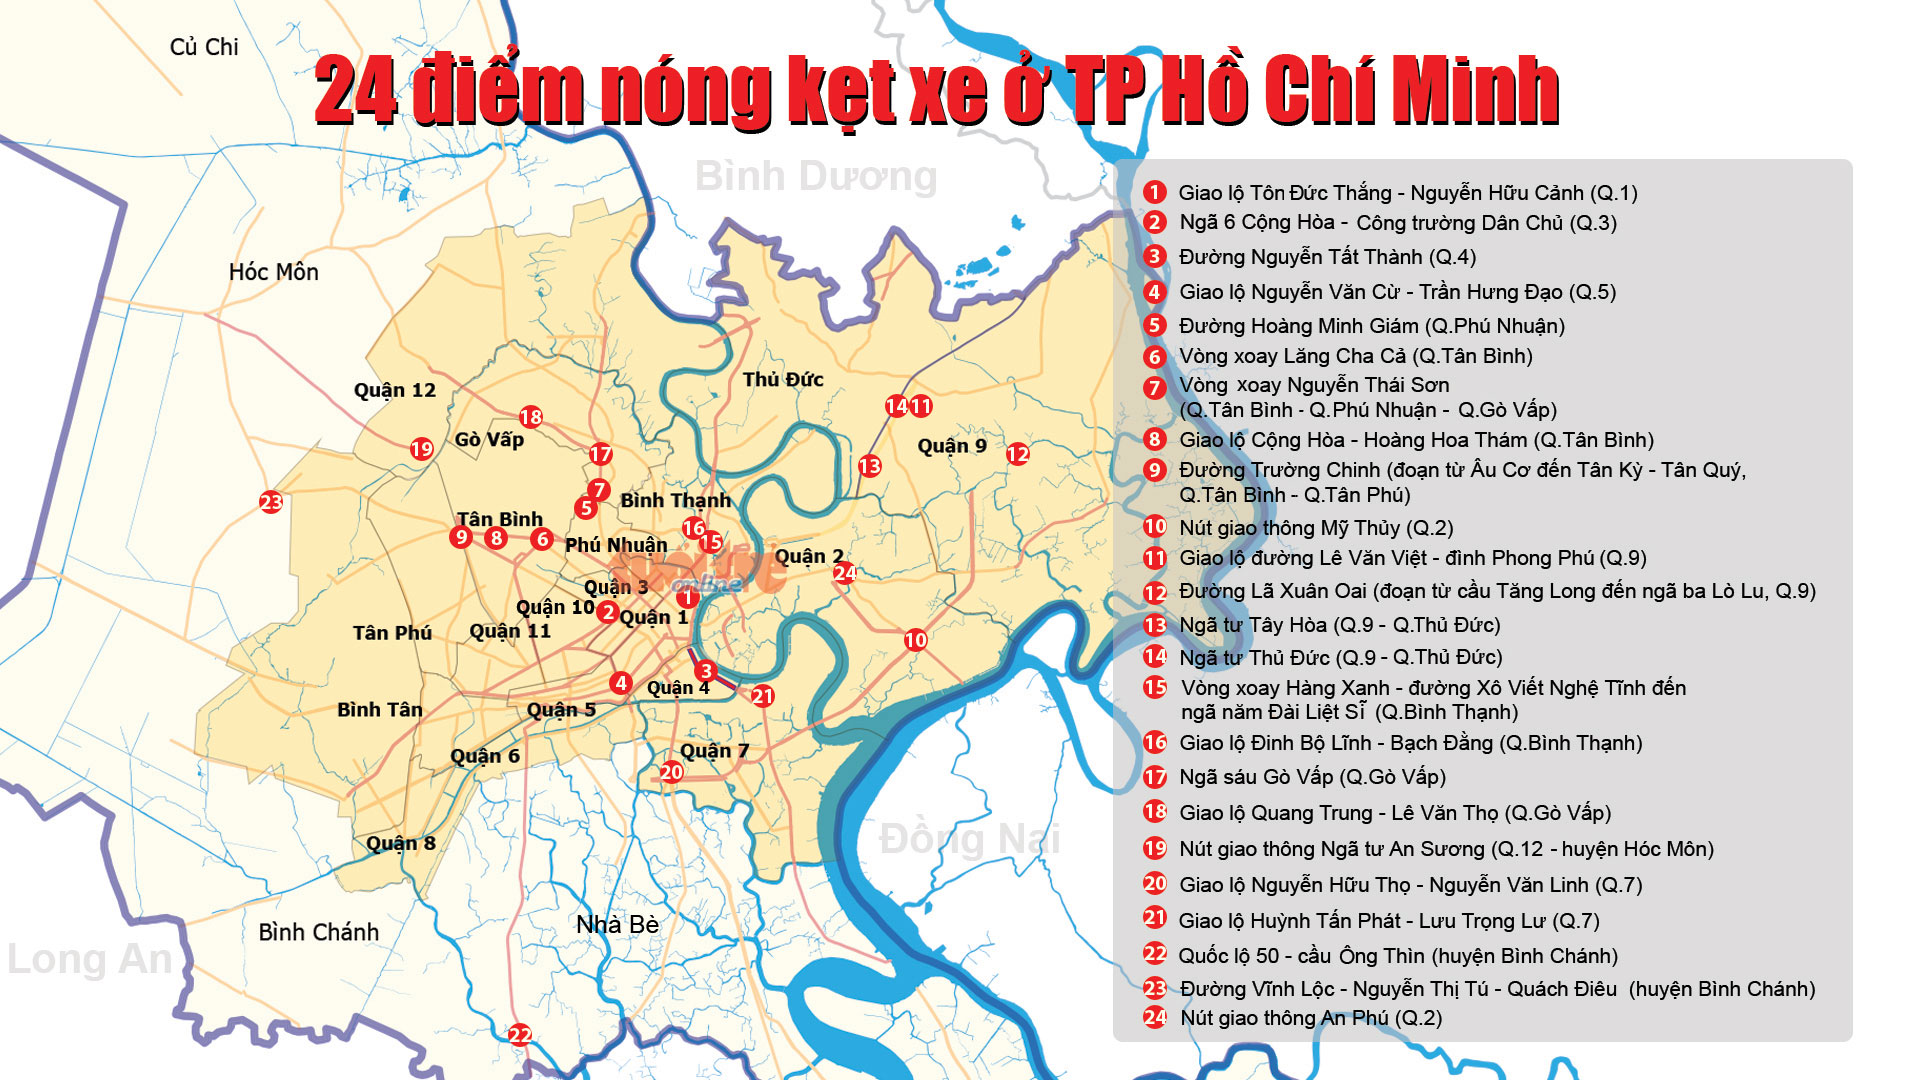 Bản đồ 24 điểm kẹt xe ở TP.HCM năm 2015 - Đồ họa: Việt Thái